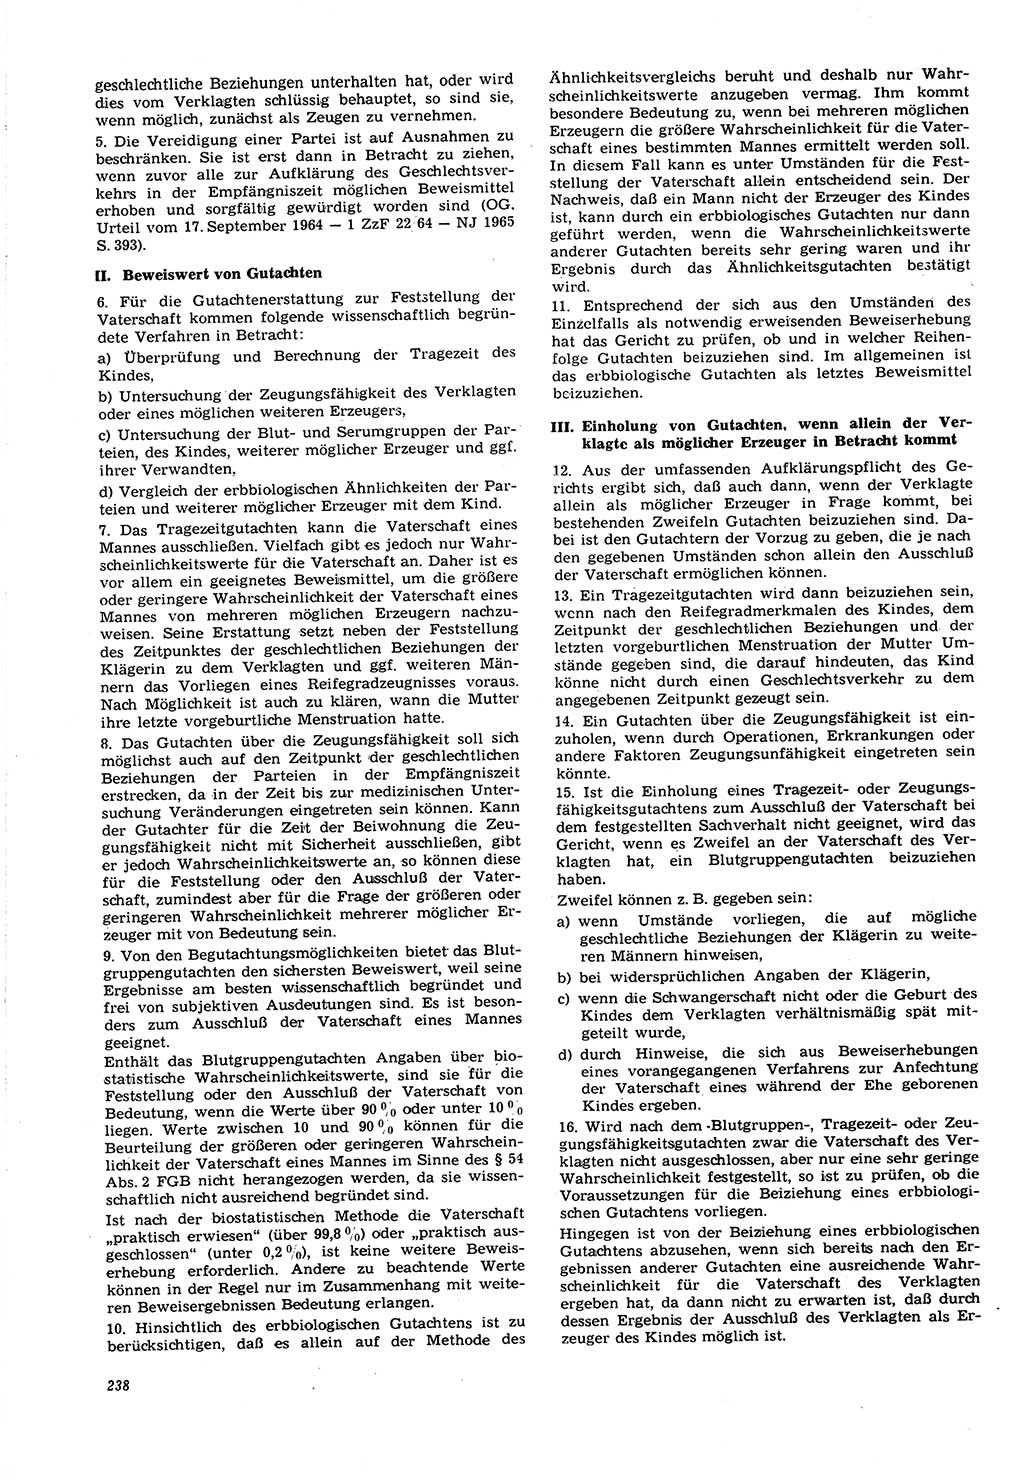 Neue Justiz (NJ), Zeitschrift für Recht und Rechtswissenschaft [Deutsche Demokratische Republik (DDR)], 21. Jahrgang 1967, Seite 238 (NJ DDR 1967, S. 238)